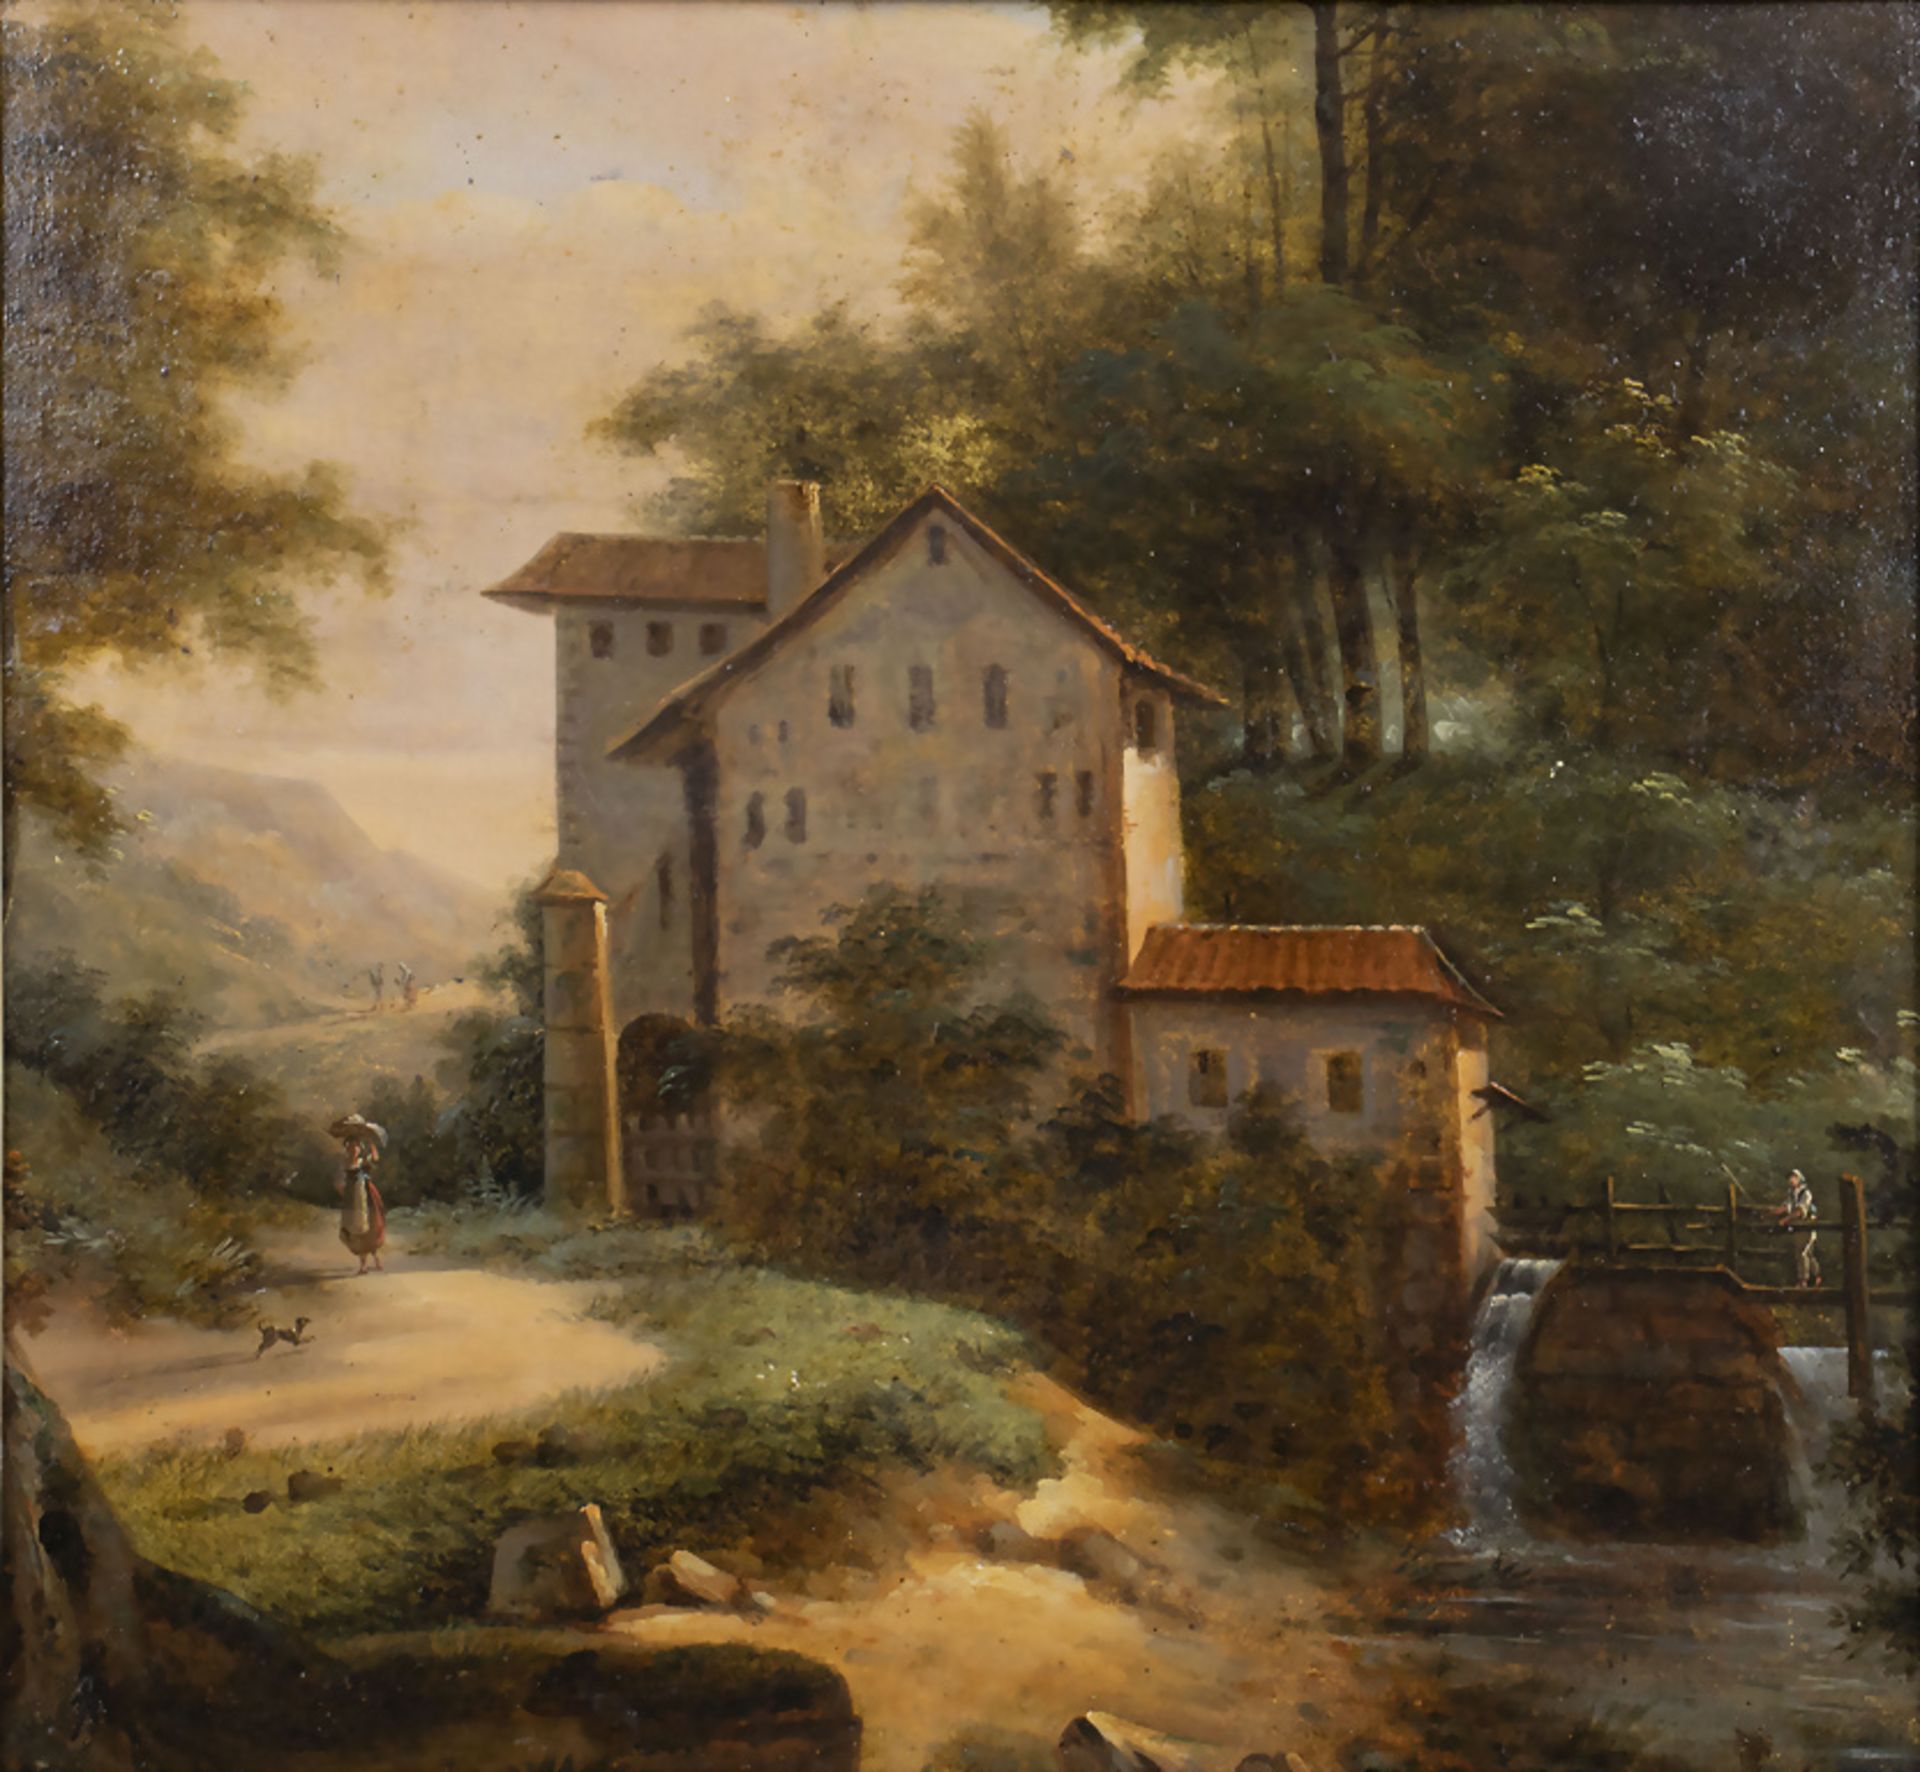 Unbekannter Romantiker des 19. Jh., 'Mühle in Landschaftsidyll / 'Mill in idyllic landscape'